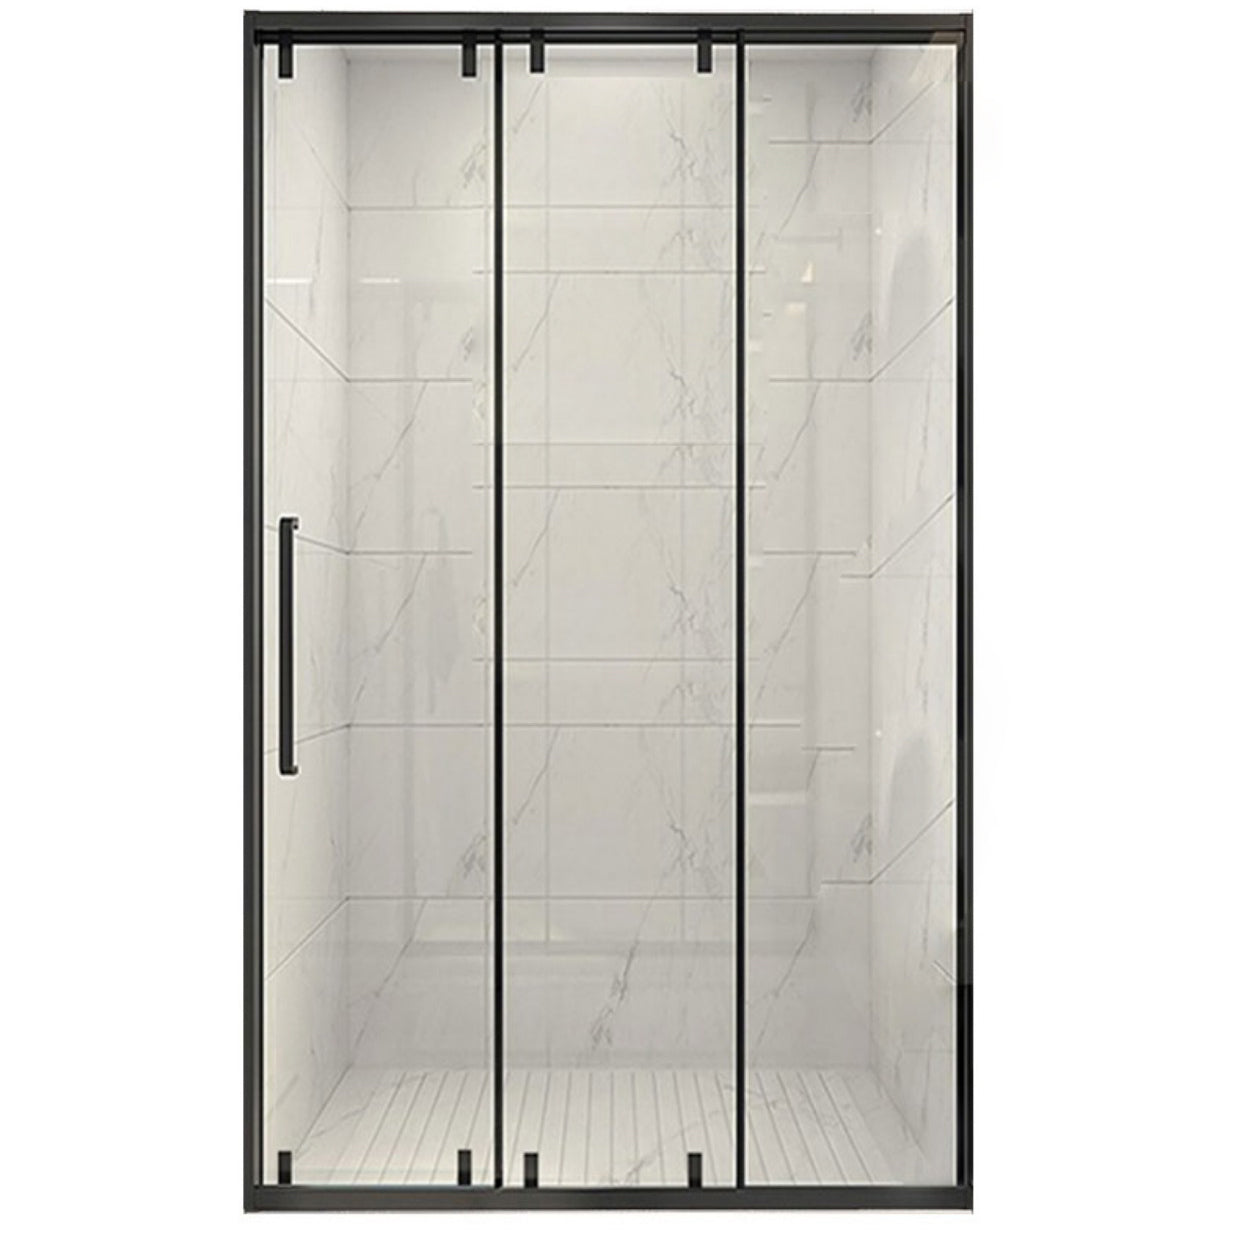 Frame Single Sliding Shower Door Transparent 8mm Tempered Shower Bath Door